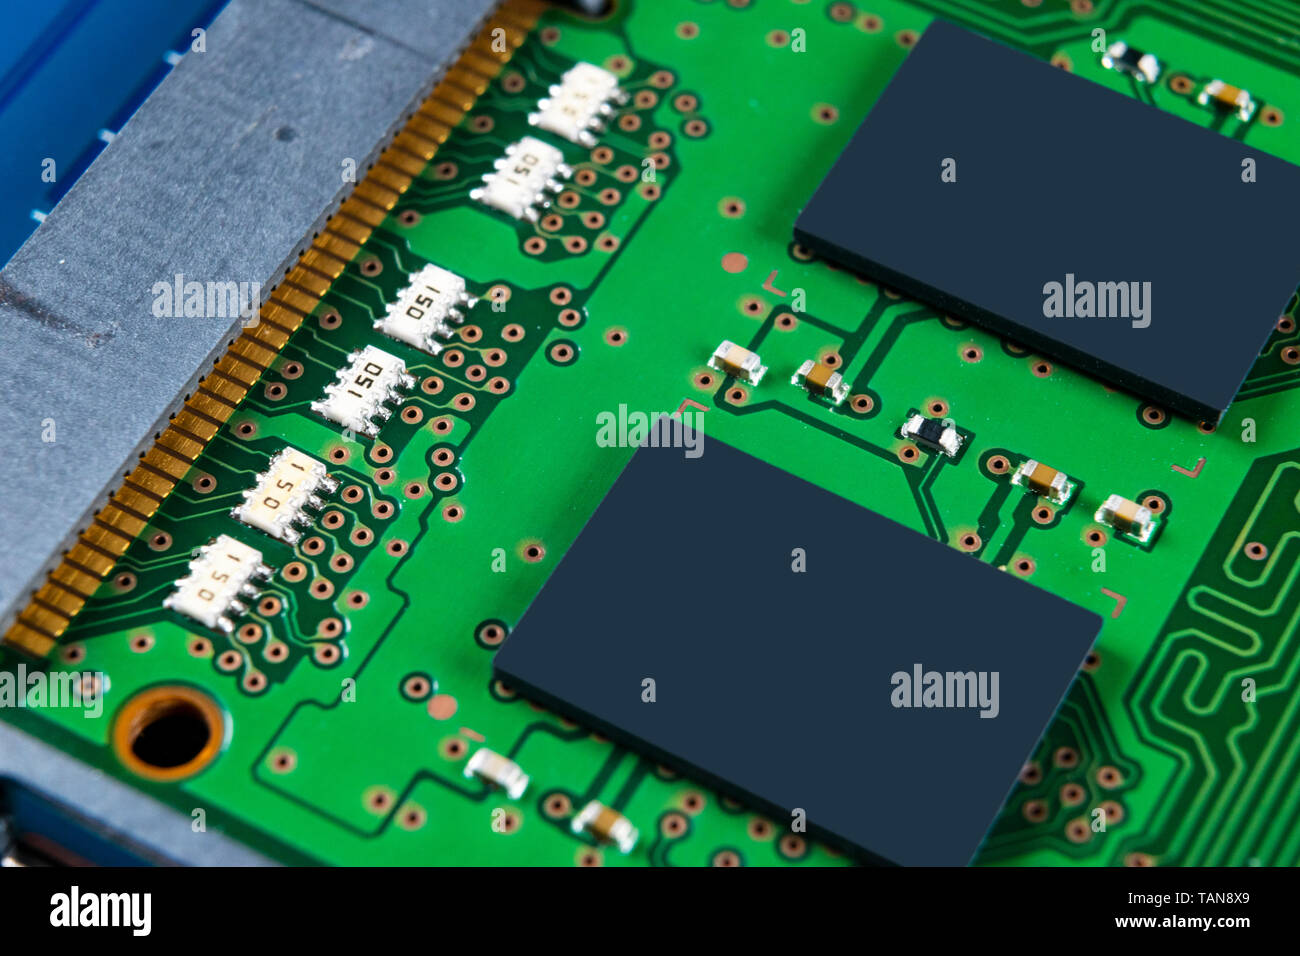 Makroaufnahme der Platine mit Widerständen Mikrochips und elektronische Komponenten. Computer Hardware Technologie. Integrierte Kommunikation Prozessor. Inf Stockfoto